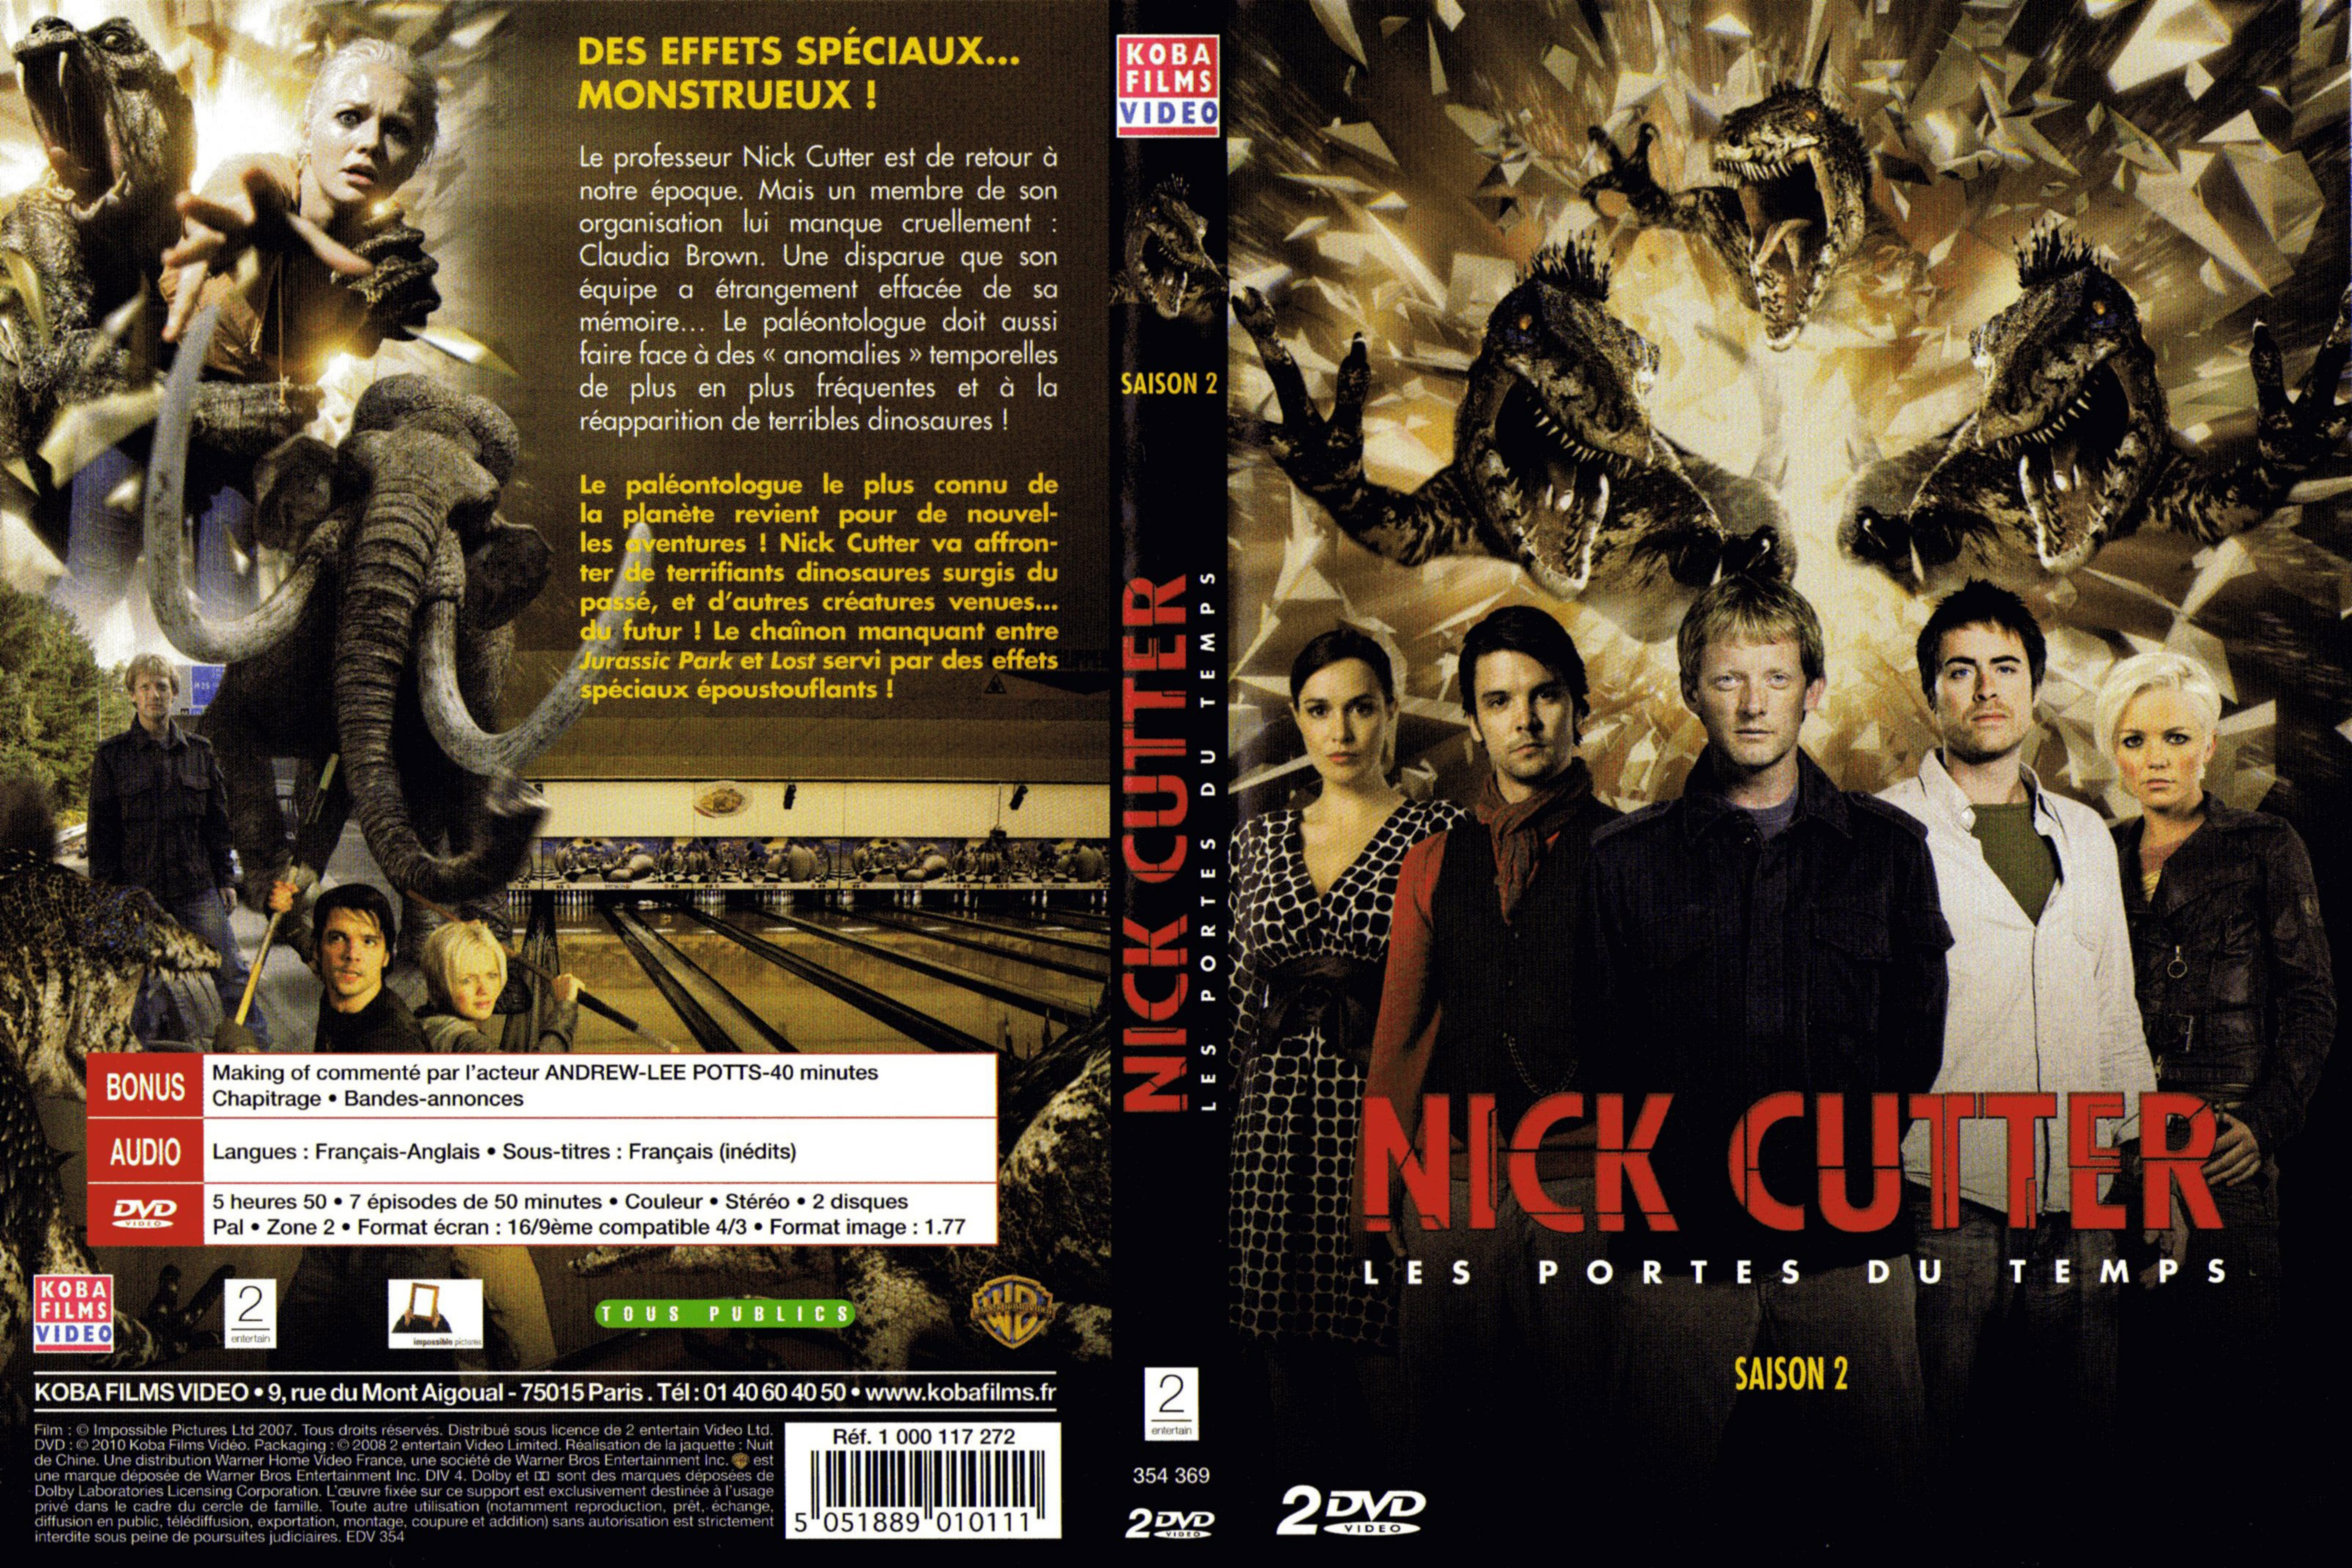 Jaquette DVD Nick Cutter Les portes du temps Saison 2